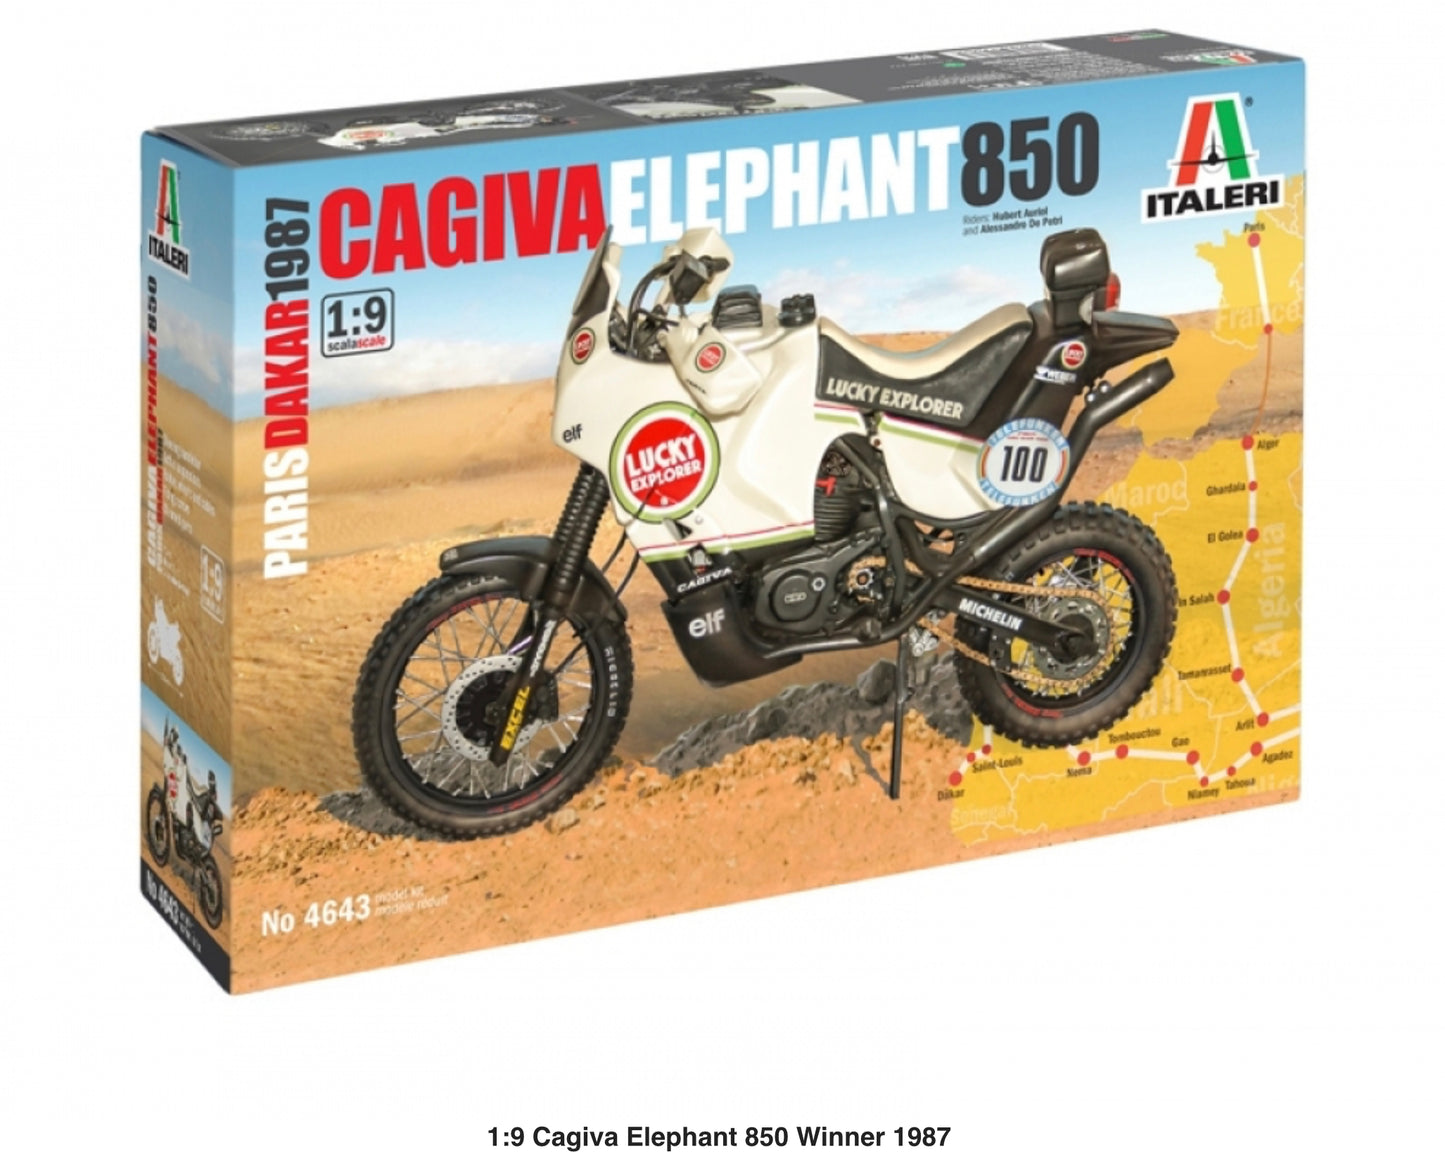 CAGIVA ELEPHANT 850 - LUCKY STRIKE - WINNER DAKAR 1985